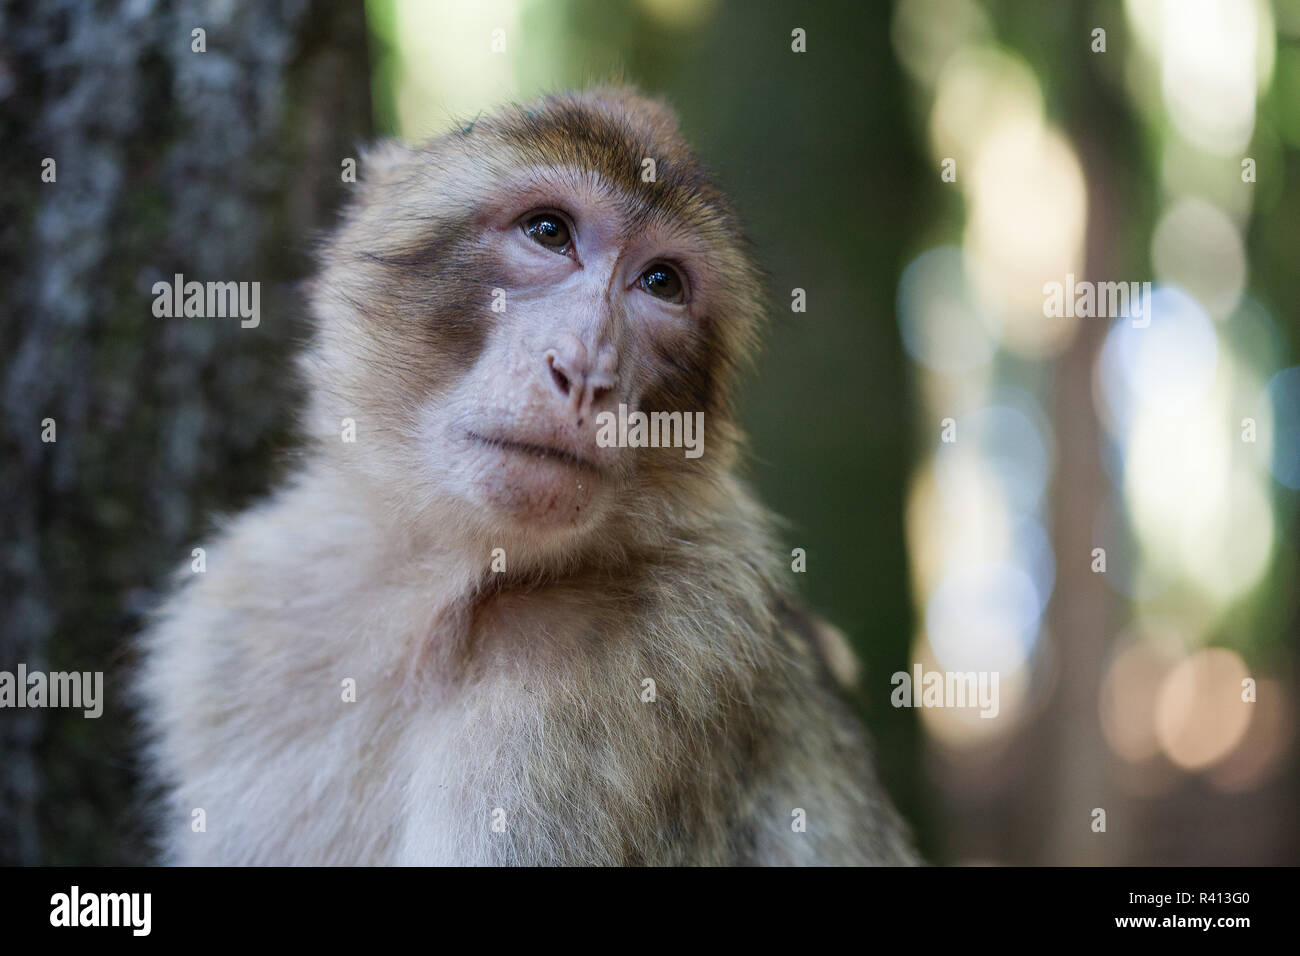 Barbary apes Stock Photo